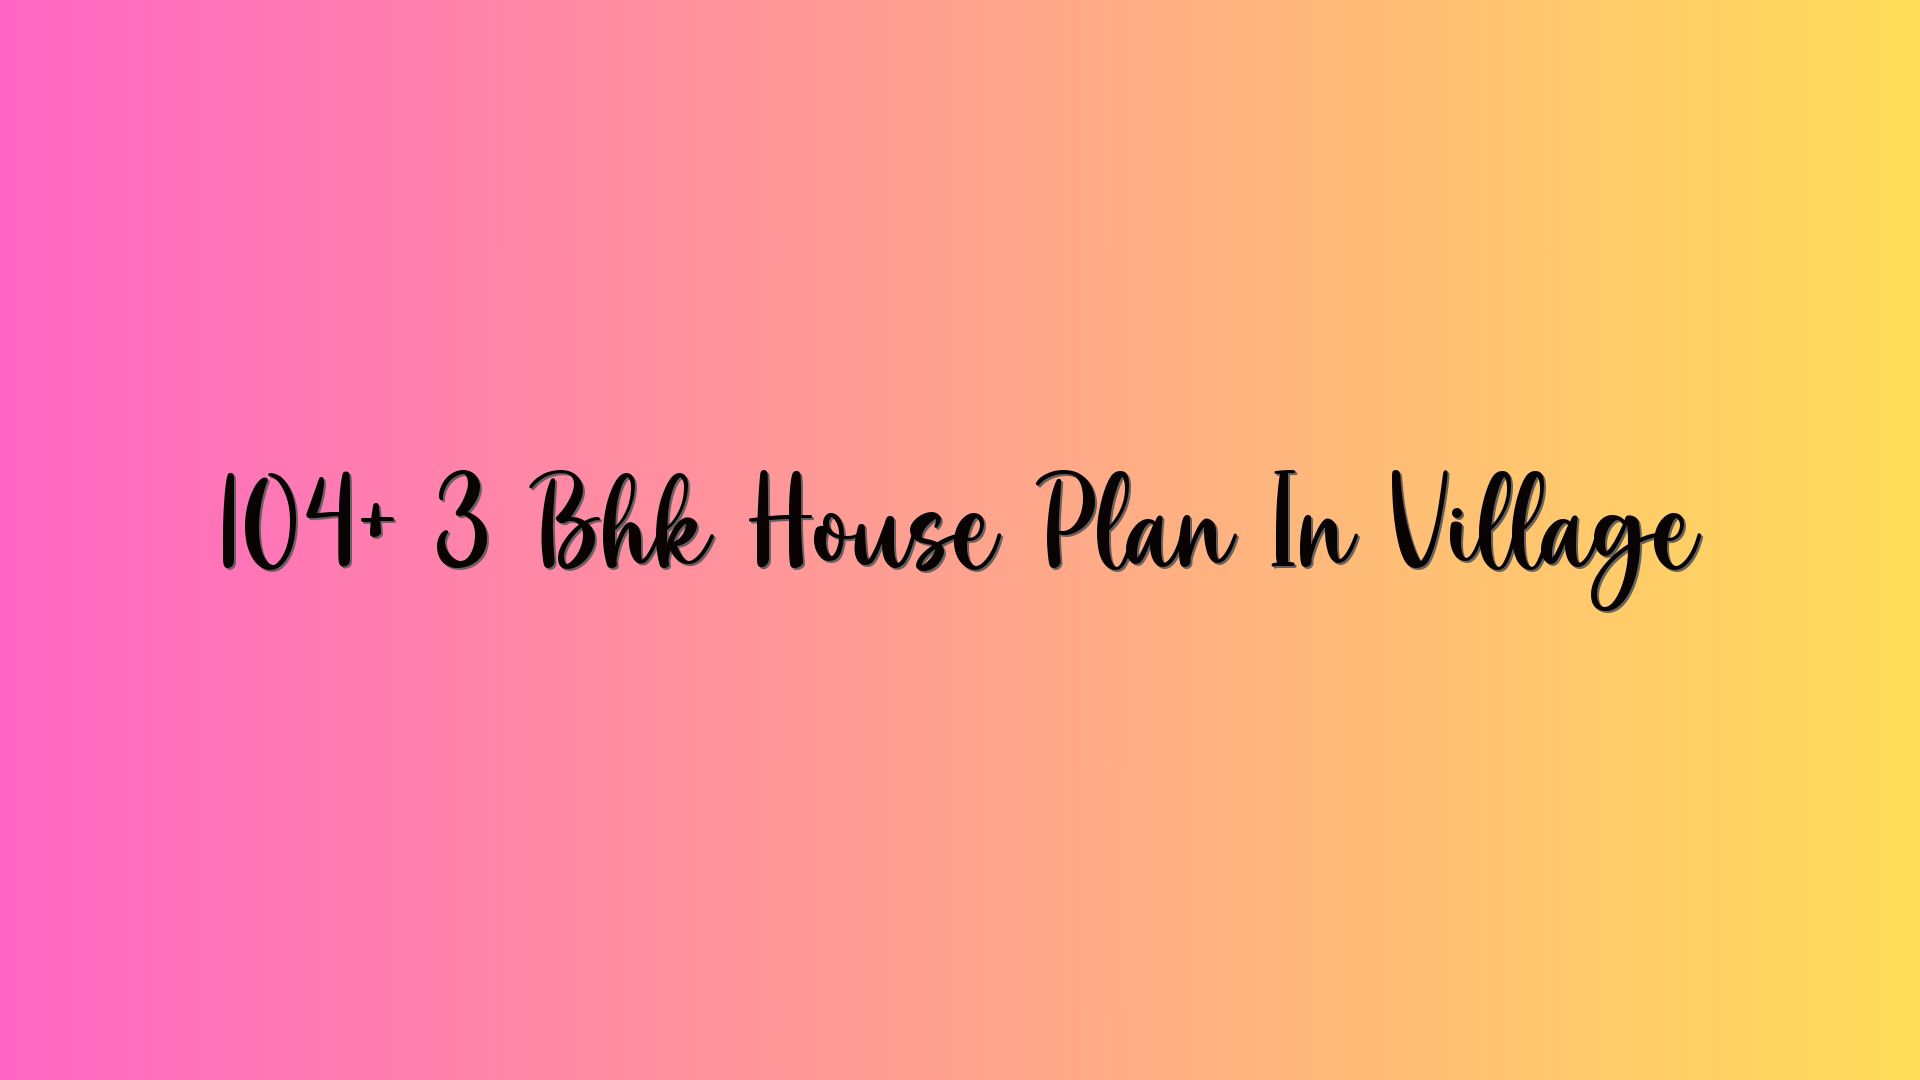 104+ 3 Bhk House Plan In Village